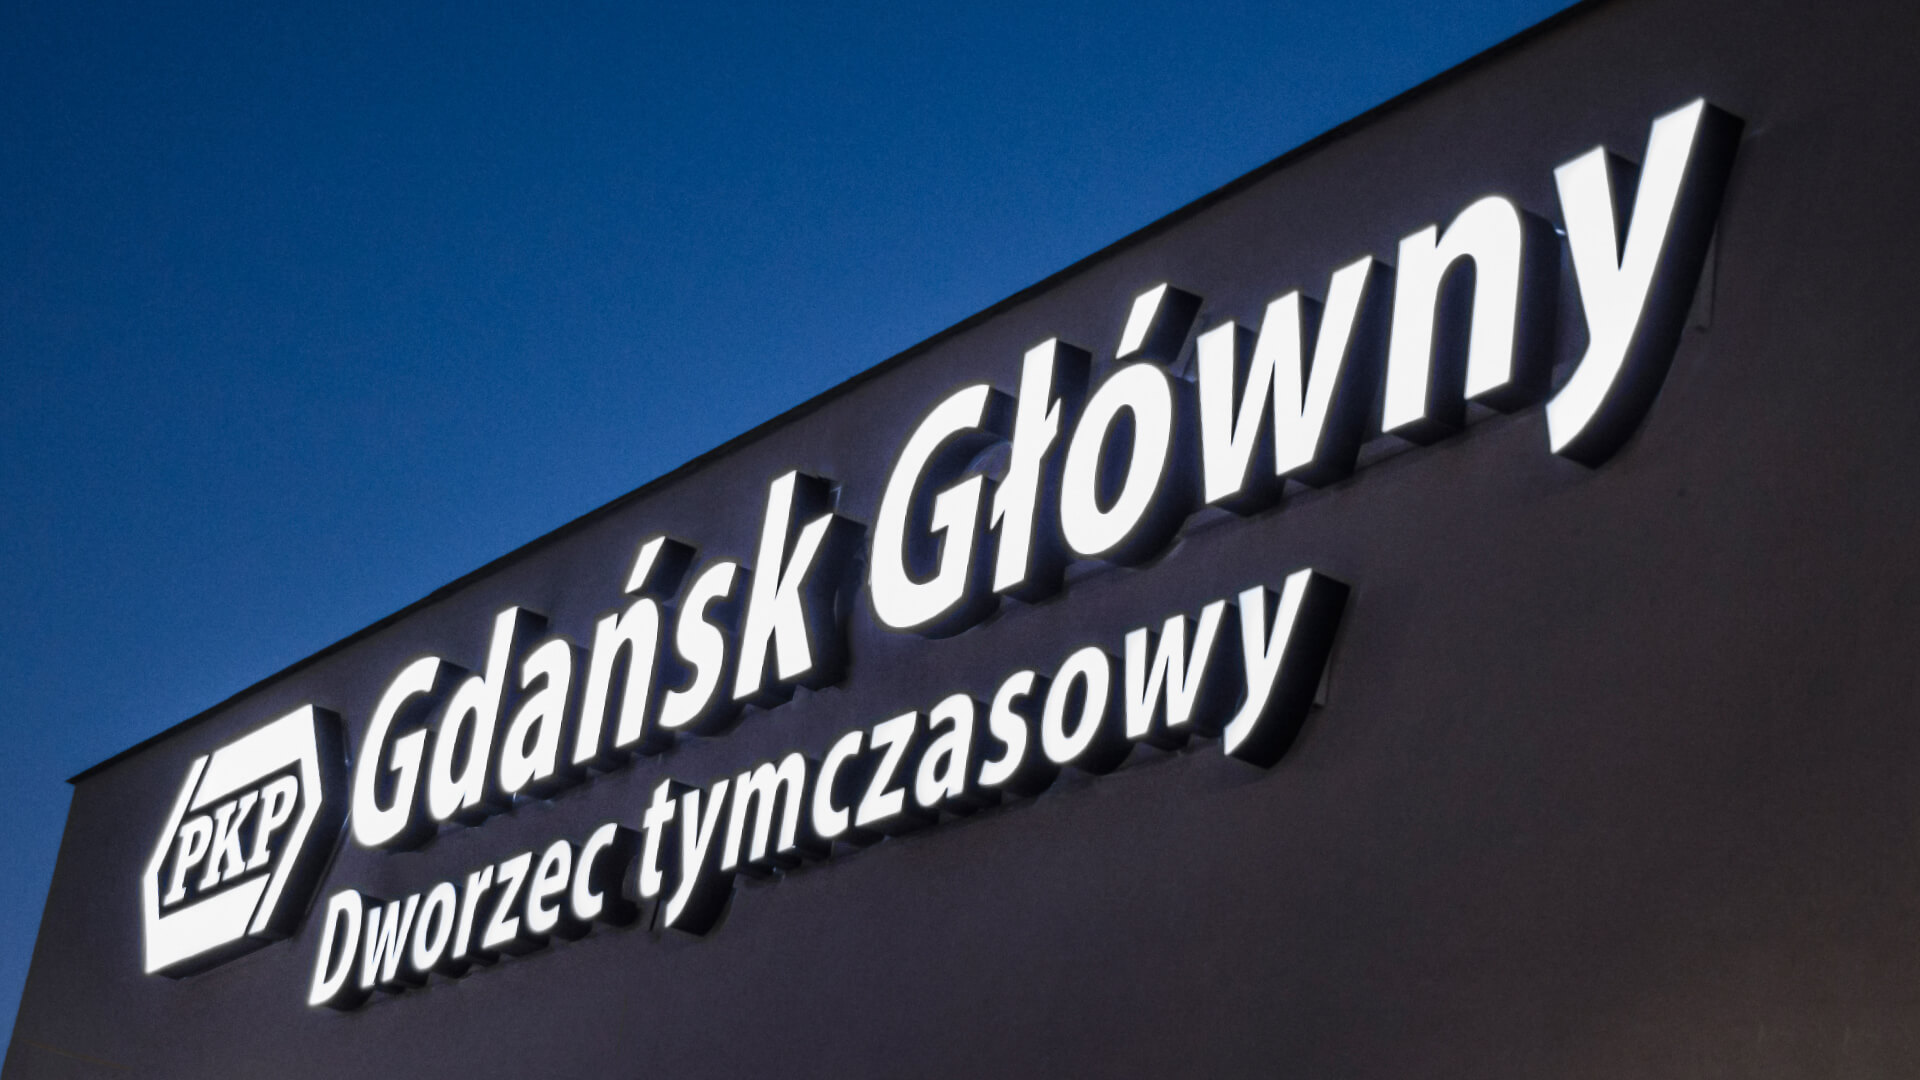 gdańsk Gdansk główny glony tymczasowy pkt dworzec - gdanski-dworzec-tymczasowy-litery-podswietlane-led-litery-na-wysokosci-litery-nad-wejsciem-biale-litery-przestrzenne-litery-na-scianie-dworzec-pkp-gdansk-glowny